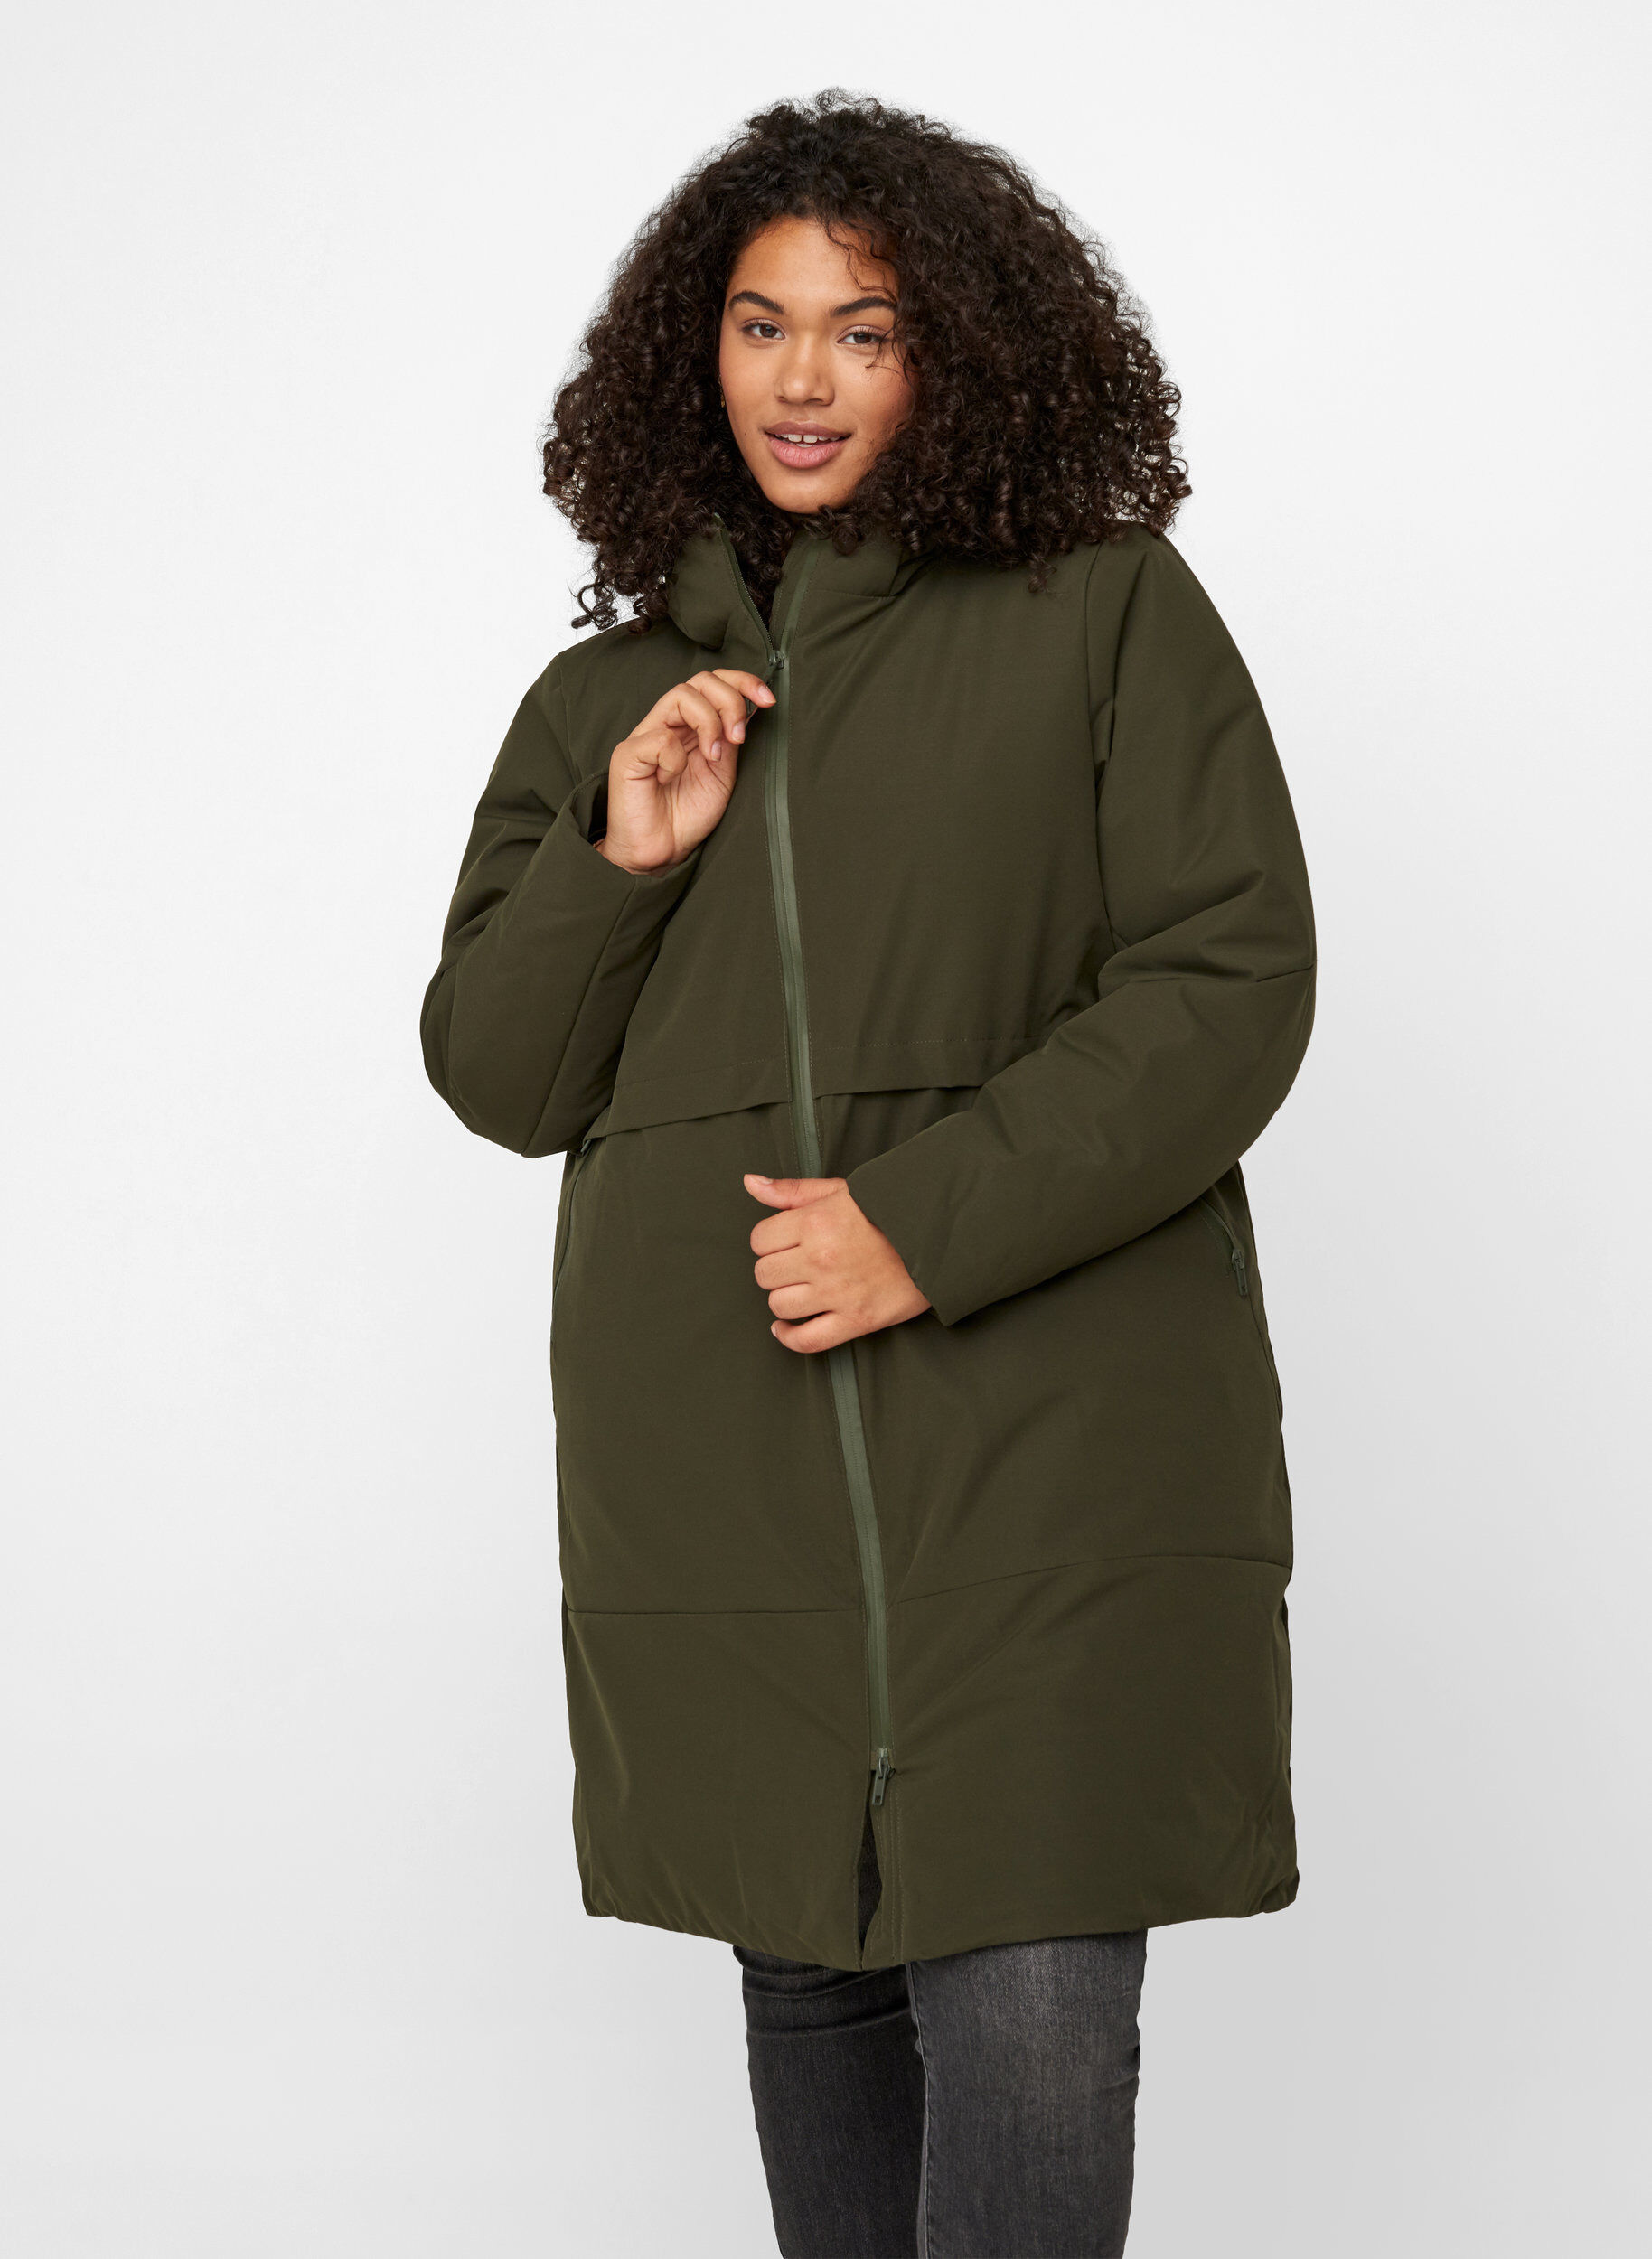 Coats for Women Dressy,Womens Winter Fuzzy Fleece Comfy Hooded Jackets Long Sleeve Open Cardigan Plus Size Jackets Coat 